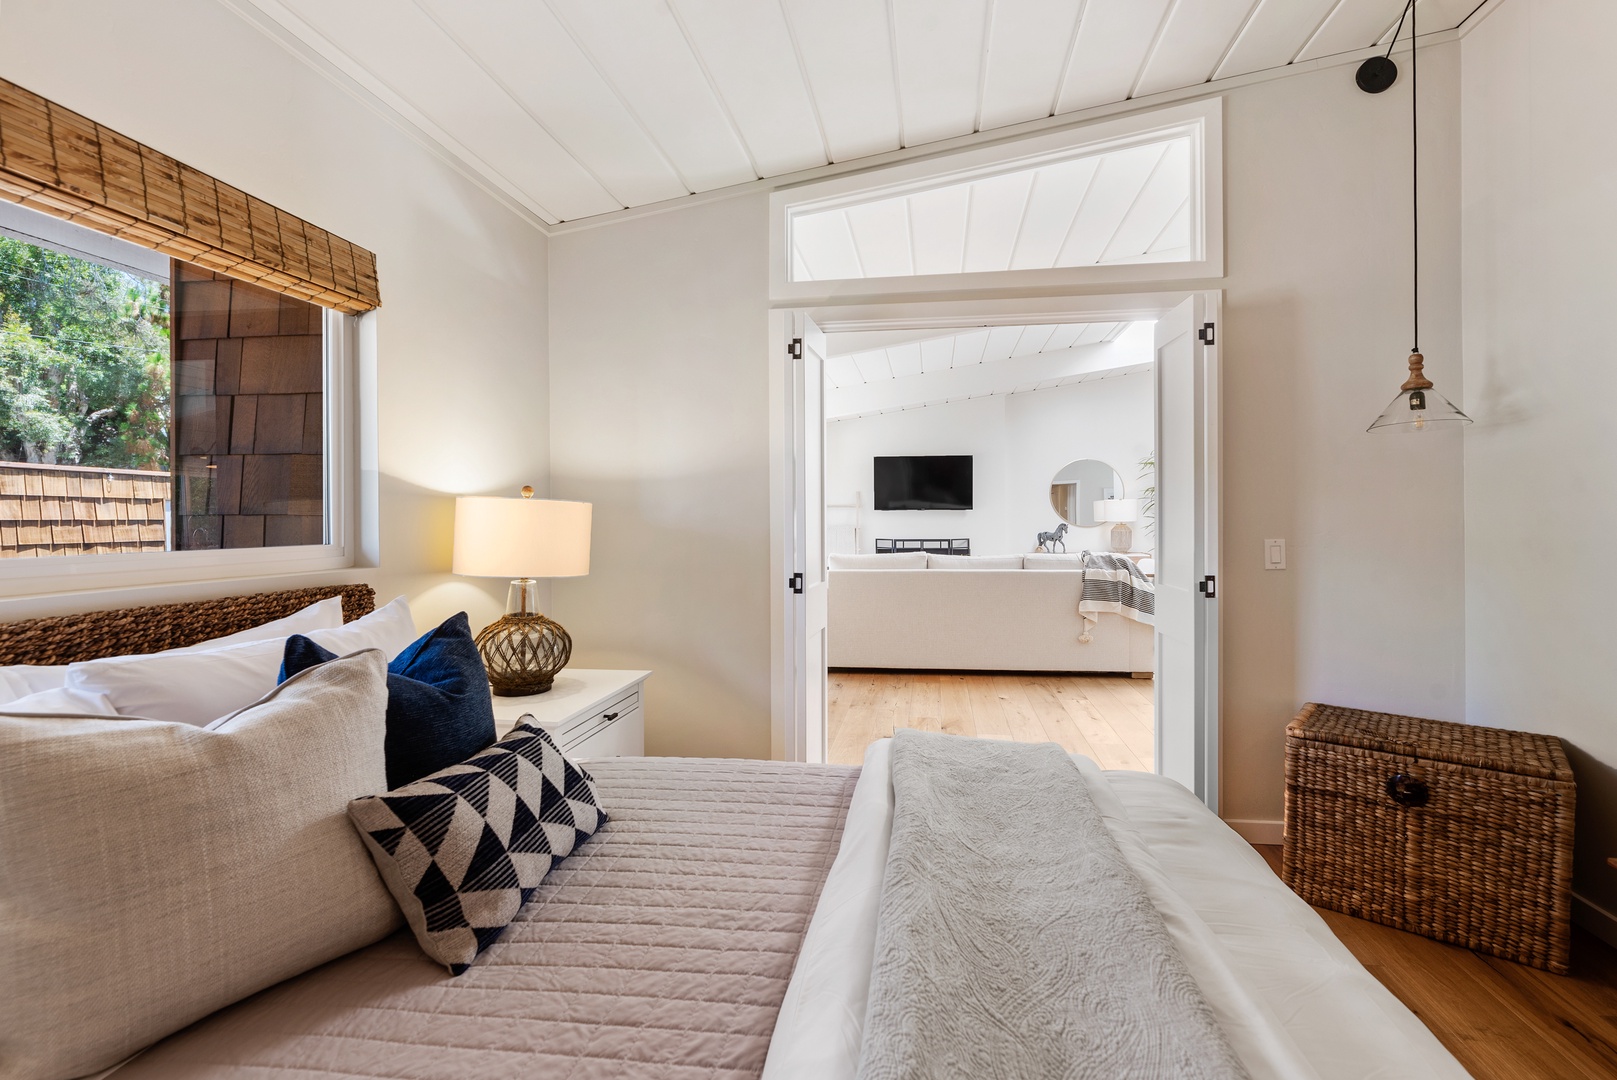 Del Mar Vacation Rentals, Del Mar Zuni Delight - Guest Bedroom with shared bath